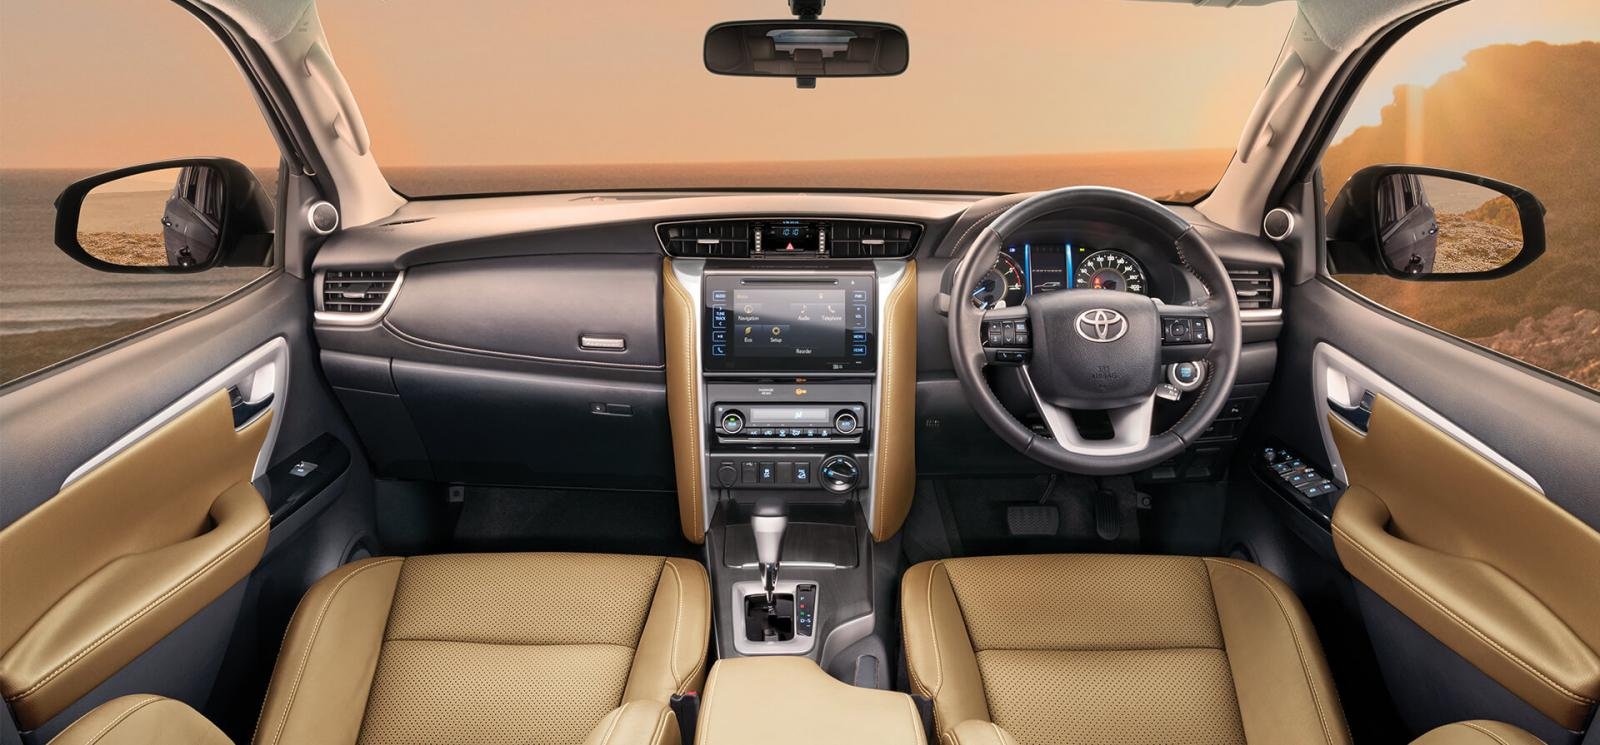 2020 BS-6 Toyota Fortuner - Interior Dashboard